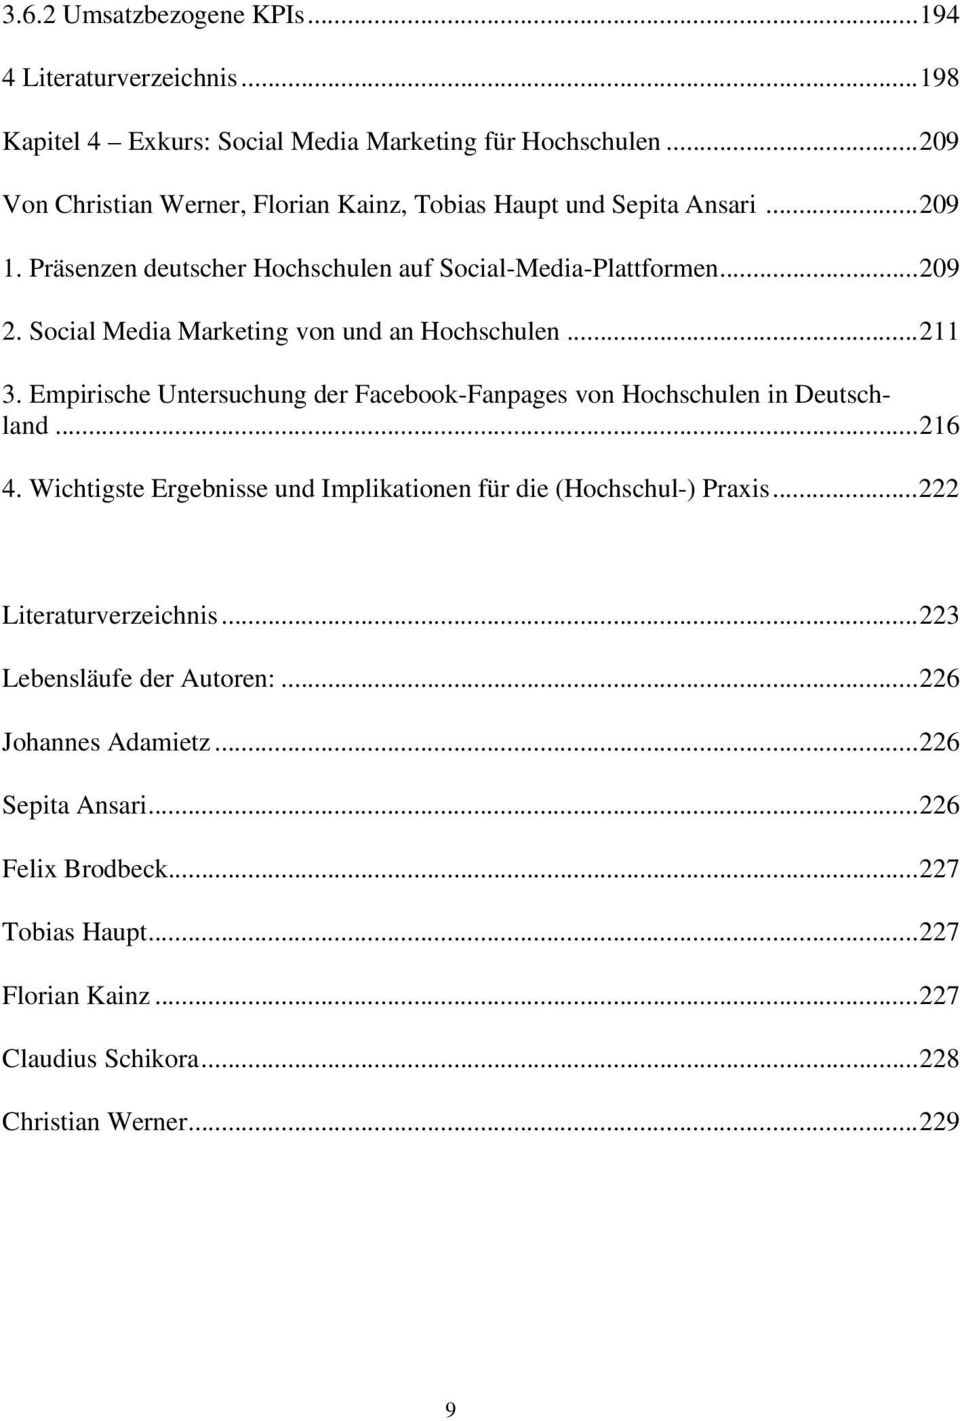 Social Media Marketing von und an Hochschulen... 211 3. Empirische Untersuchung der Facebook-Fanpages von Hochschulen in Deutschland... 216 4.